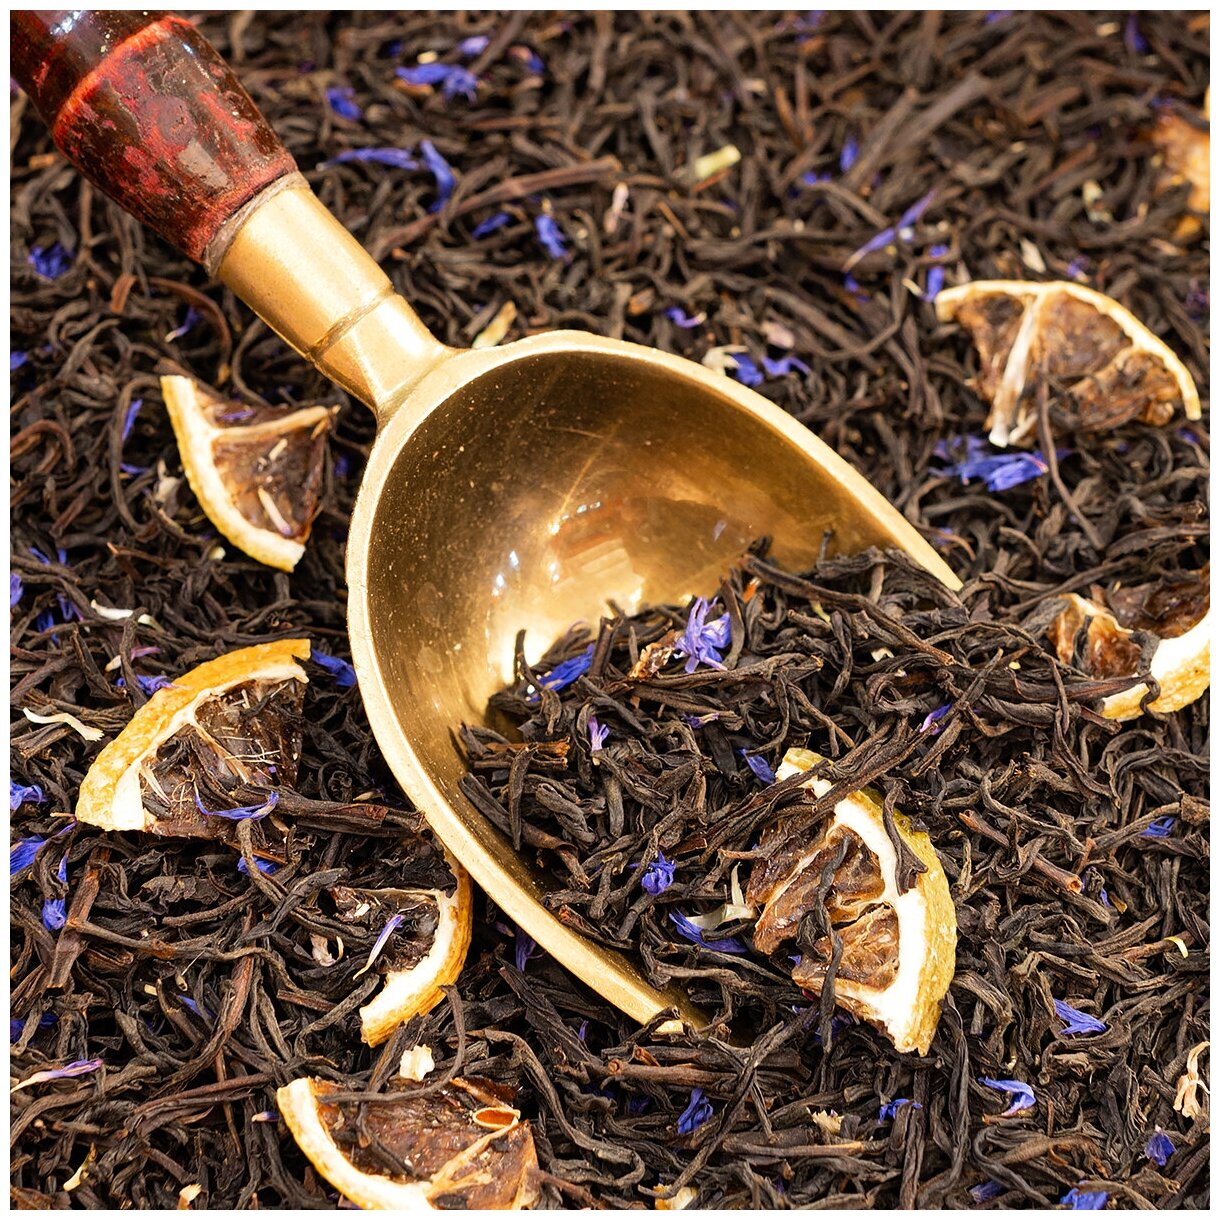 Чай черный Sunleaf Earl Grey, 100 г / листовой черный цейлонский чай / чай с бергамотом / Эрл Грей - фотография № 4